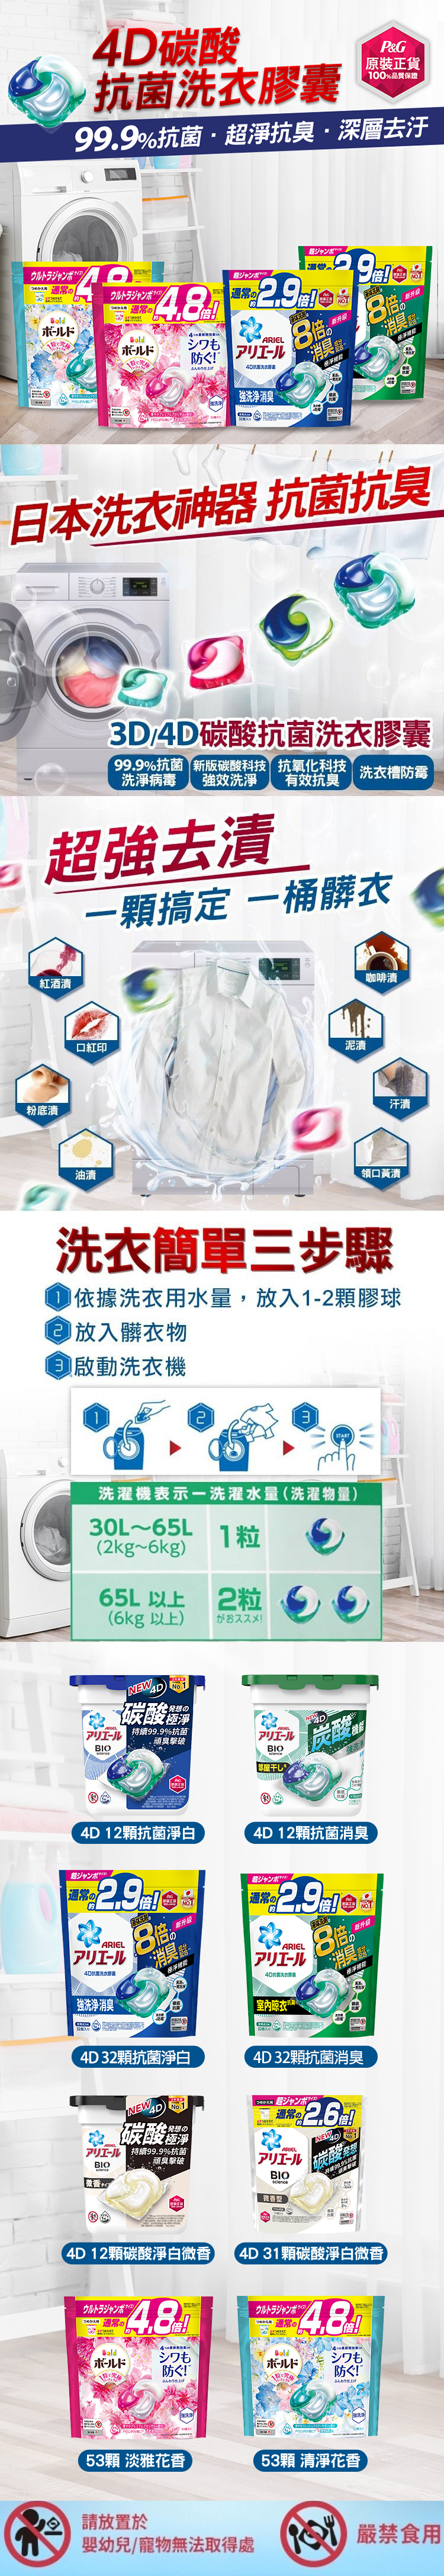 【P&G寶僑】ARIEL 4D碳酸機能洗衣膠球補充包(抗菌消臭/微香/花香)